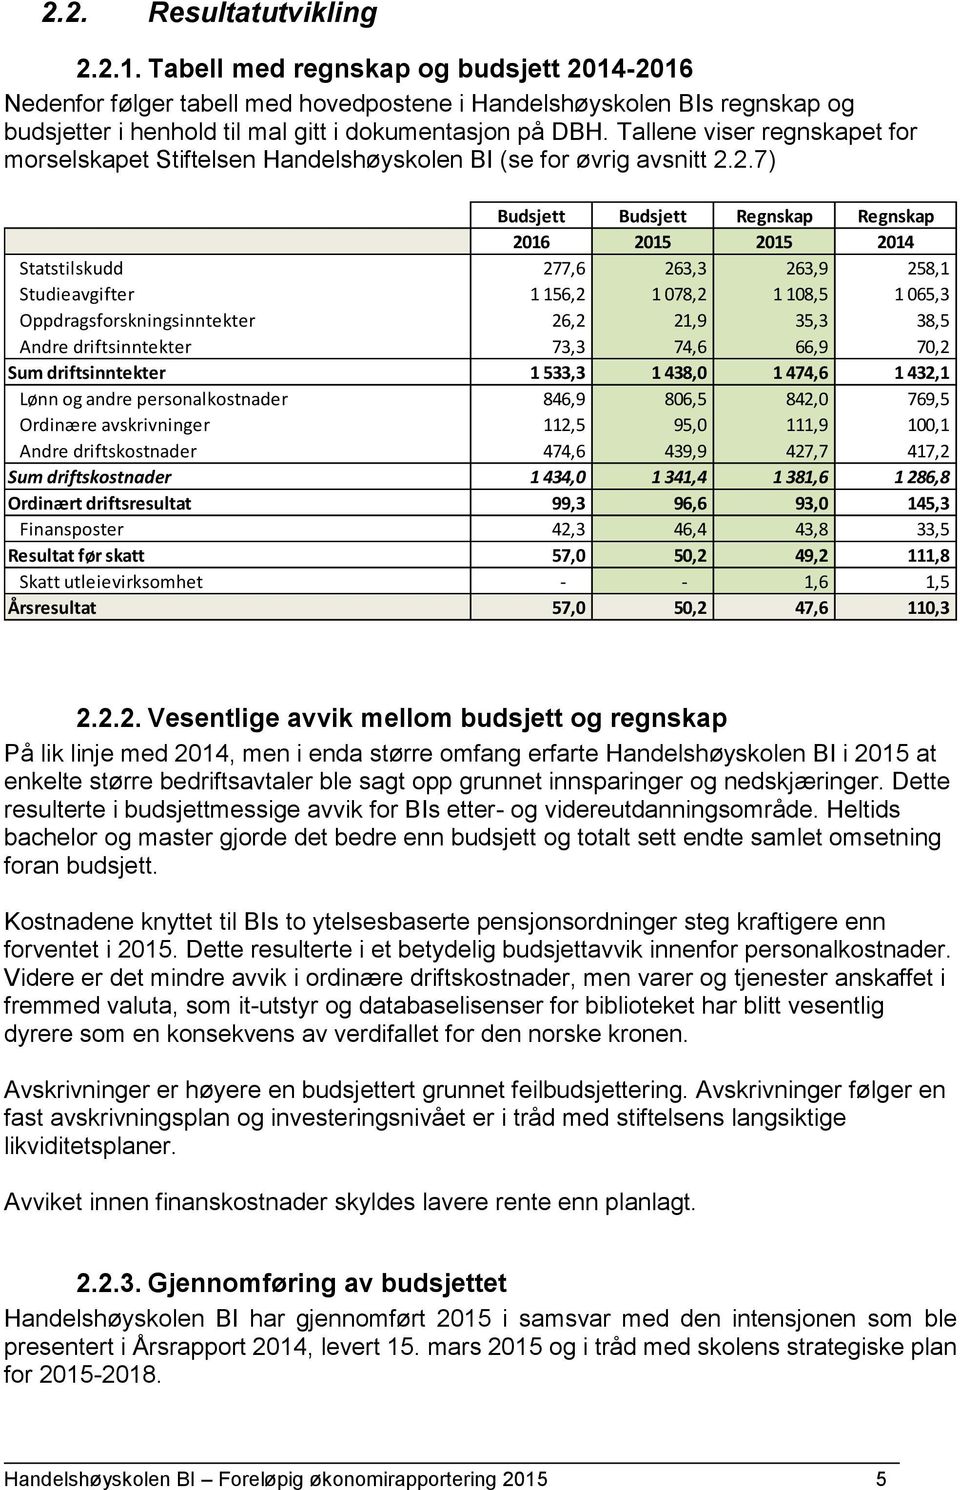 Tallene viser regnskapet for morselskapet Stiftelsen Handelshøyskolen BI (se for øvrig avsnitt 2.